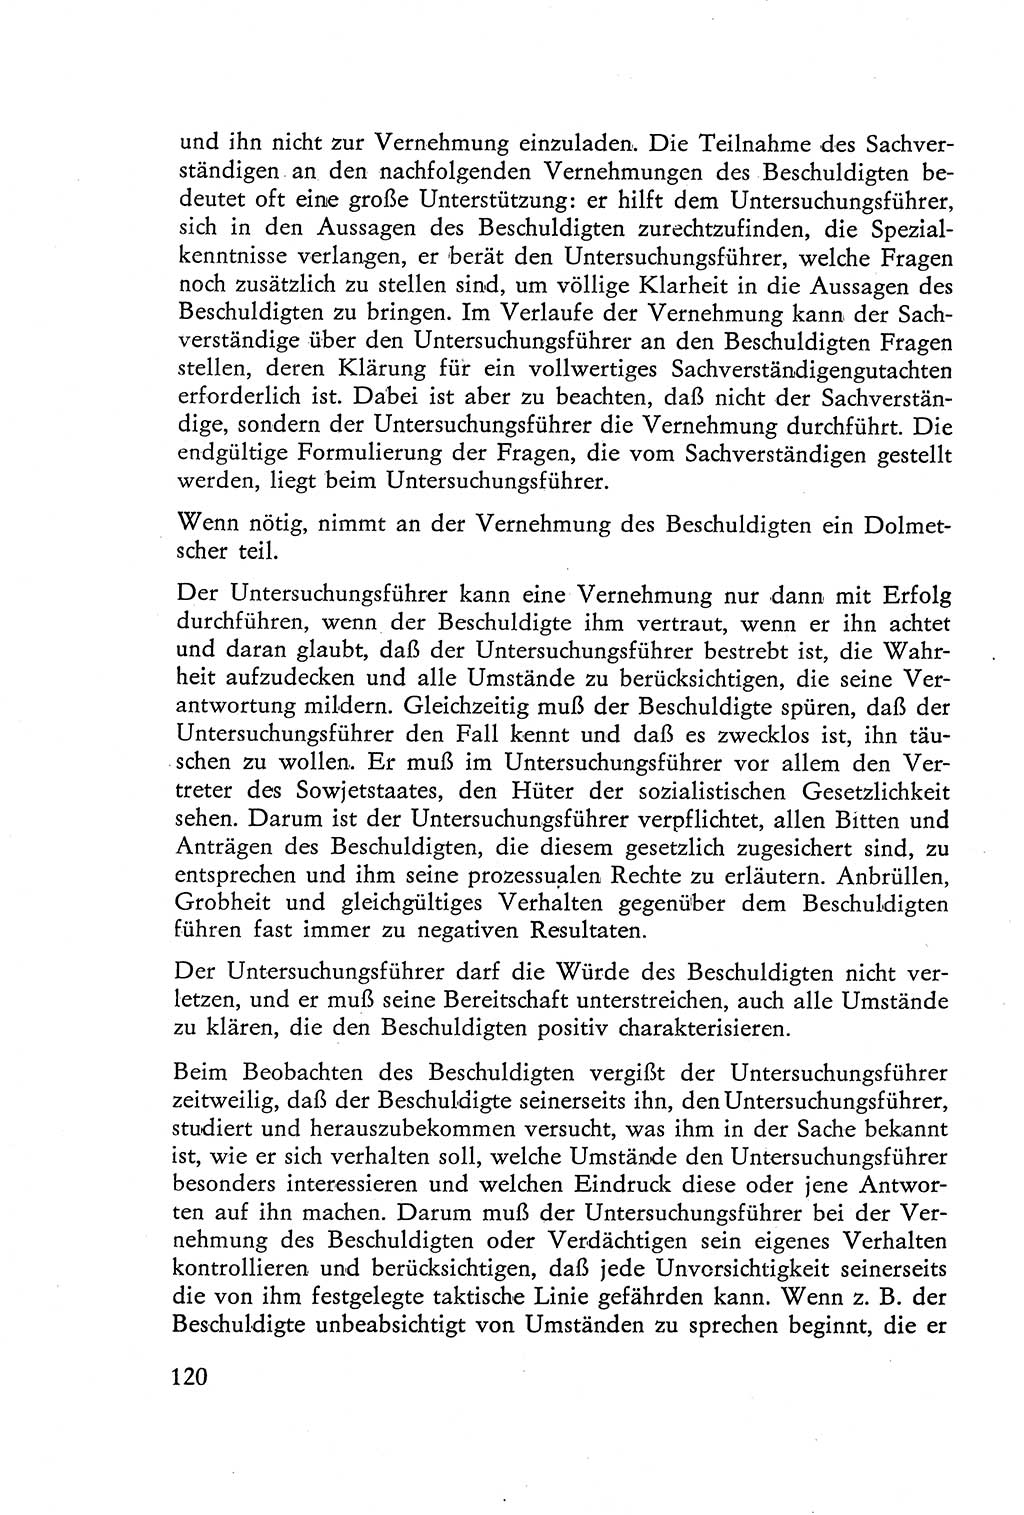 Die Vernehmung [Deutsche Demokratische Republik (DDR)] 1960, Seite 120 (Vern. DDR 1960, S. 120)